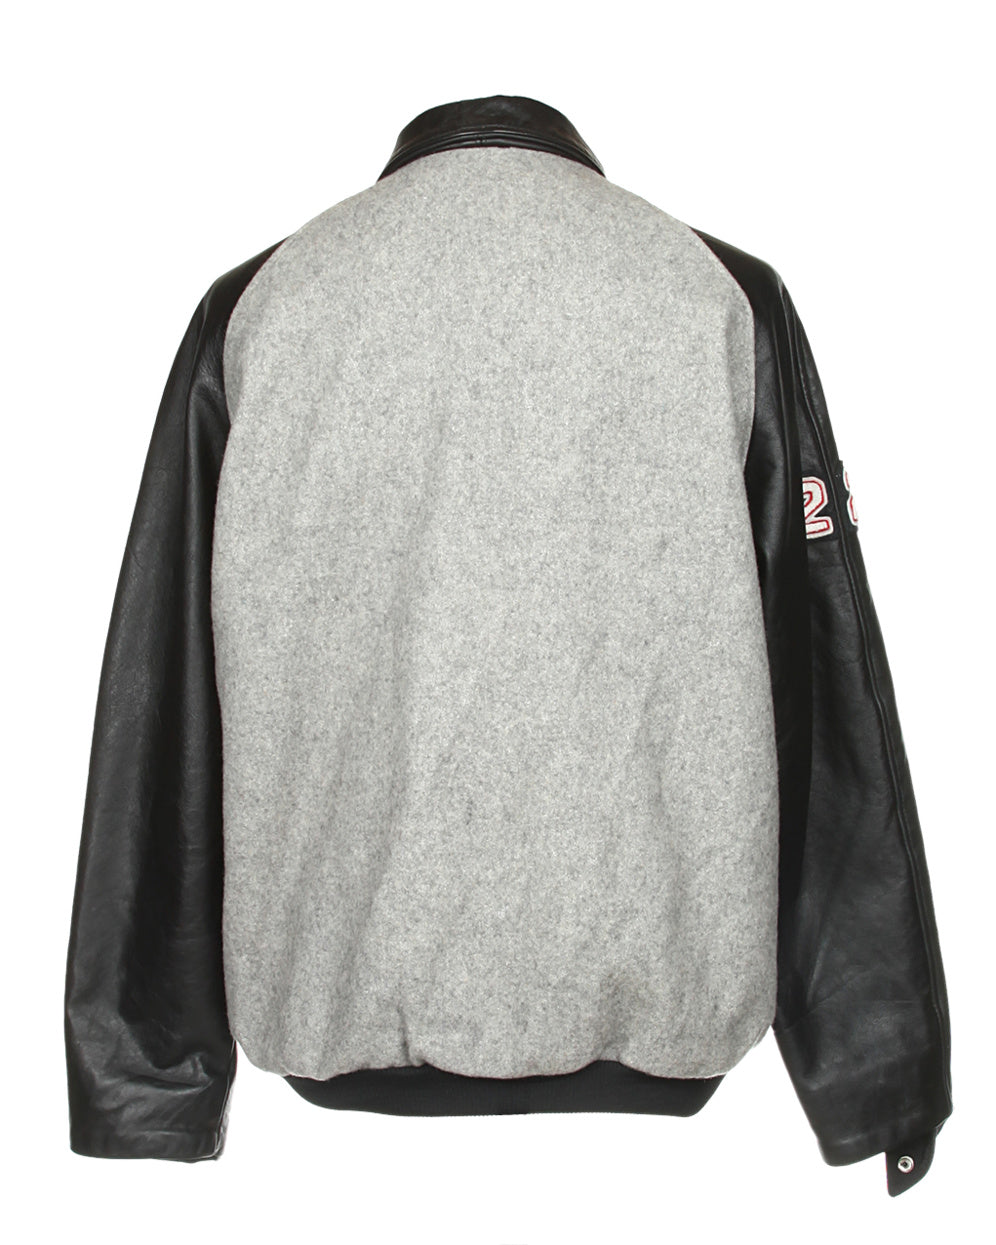 Black & Grey Varsity Jacket - XL